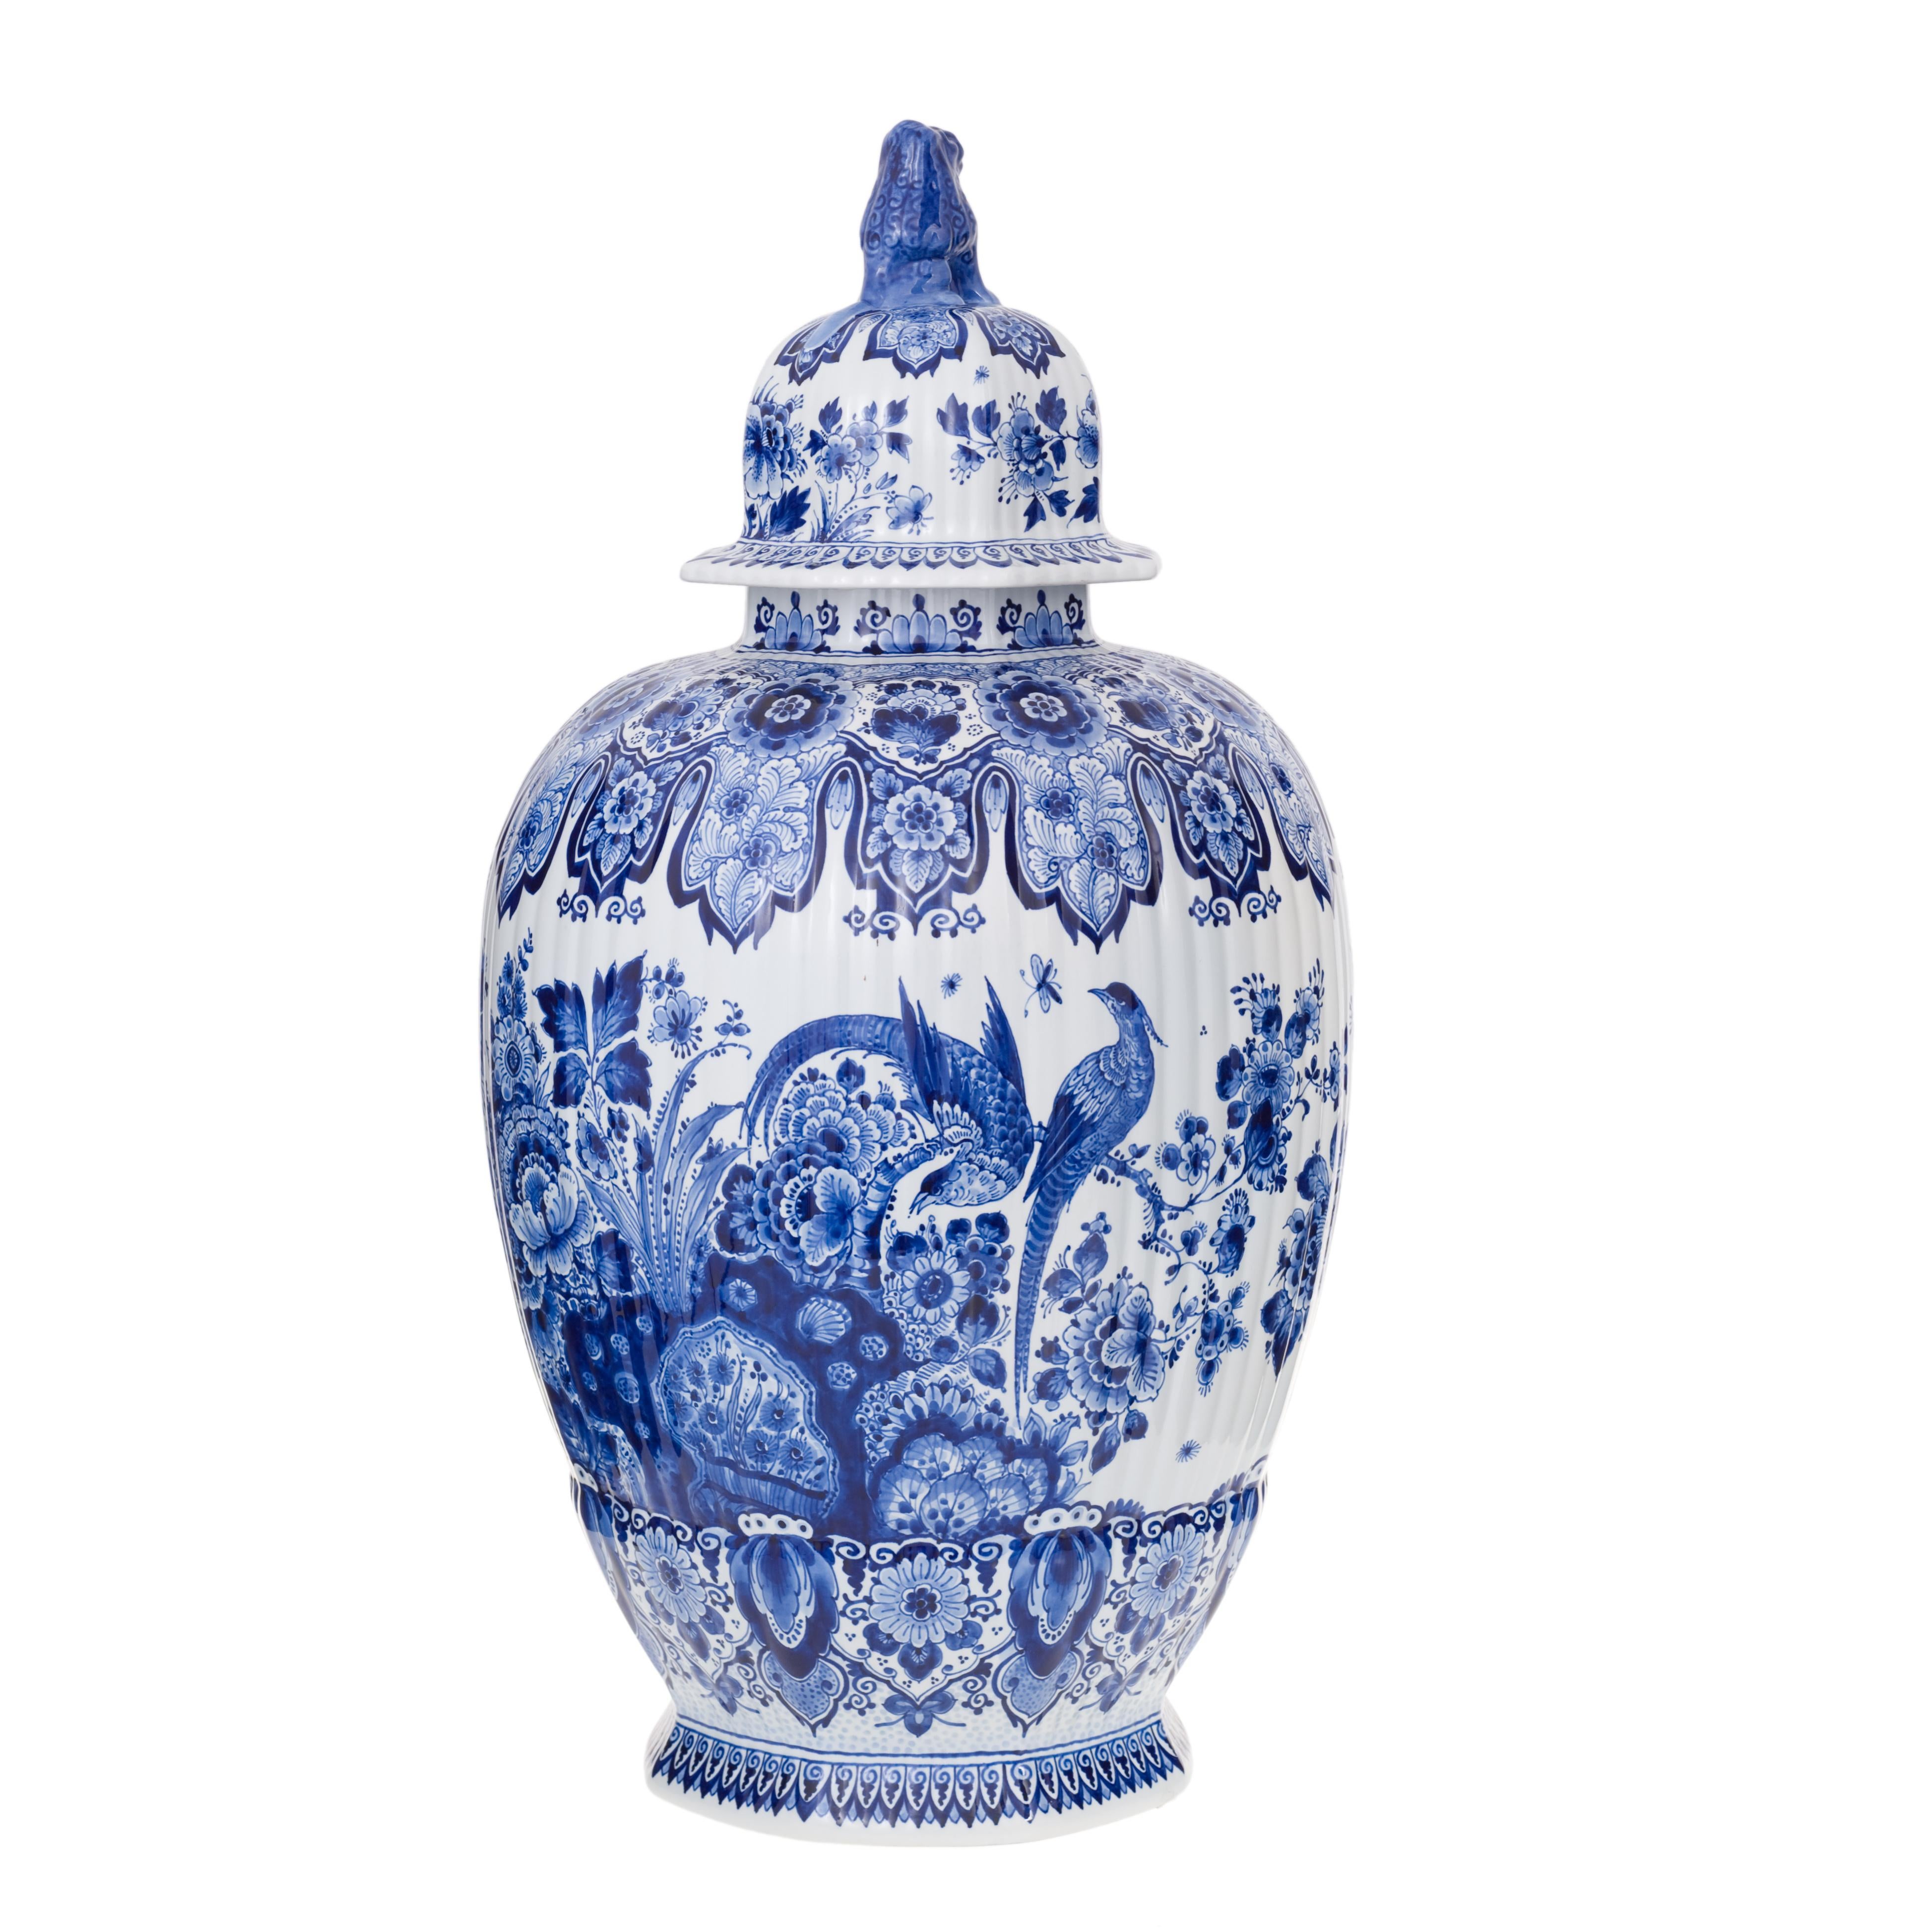 Vase peint à la main, richement décoré de motifs floraux et d'oiseaux en bleu Delft d'origine. Il s'agit d'un exemple de pièce purement décorative. Toute la surface de la jarre est une décoration équilibrée peinte à la main avec une représentation